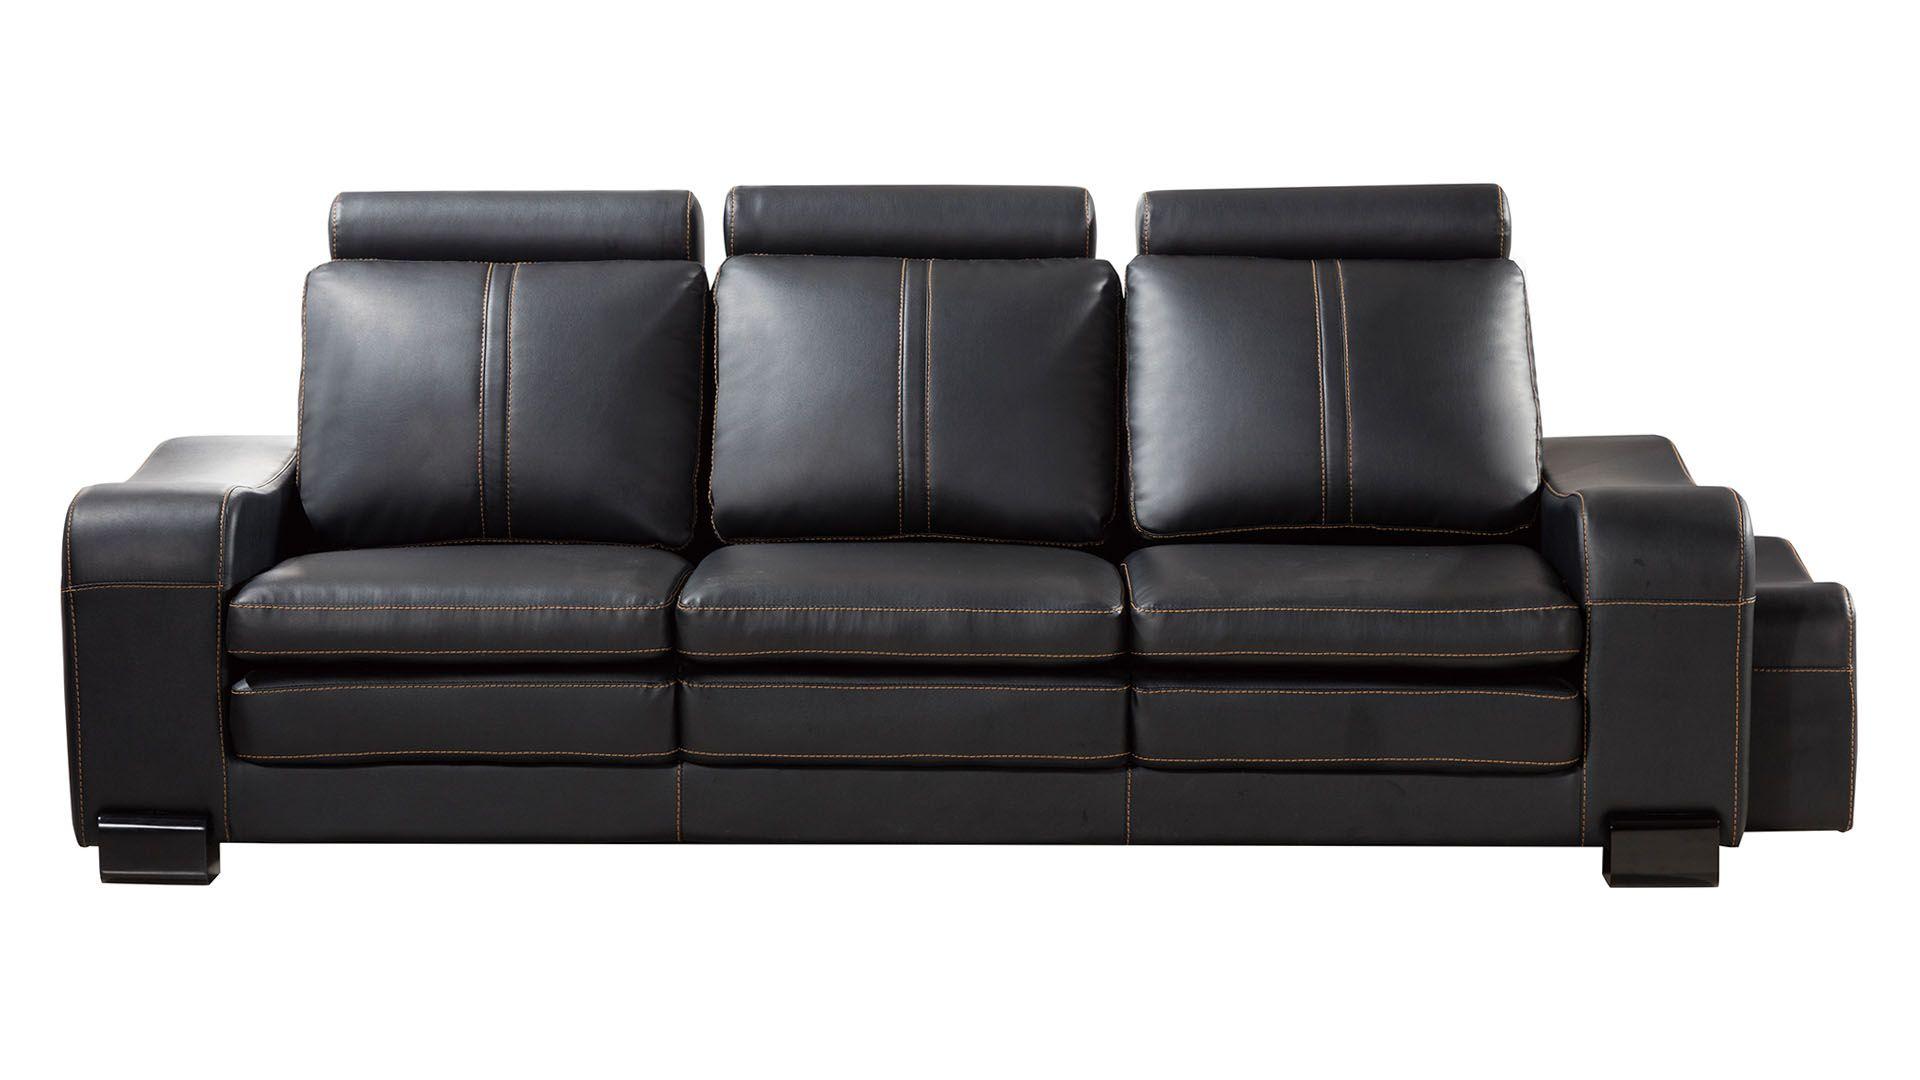 

    
American Eagle Furniture AE210-BK Sofa Set Black AE210-BK-4PC
